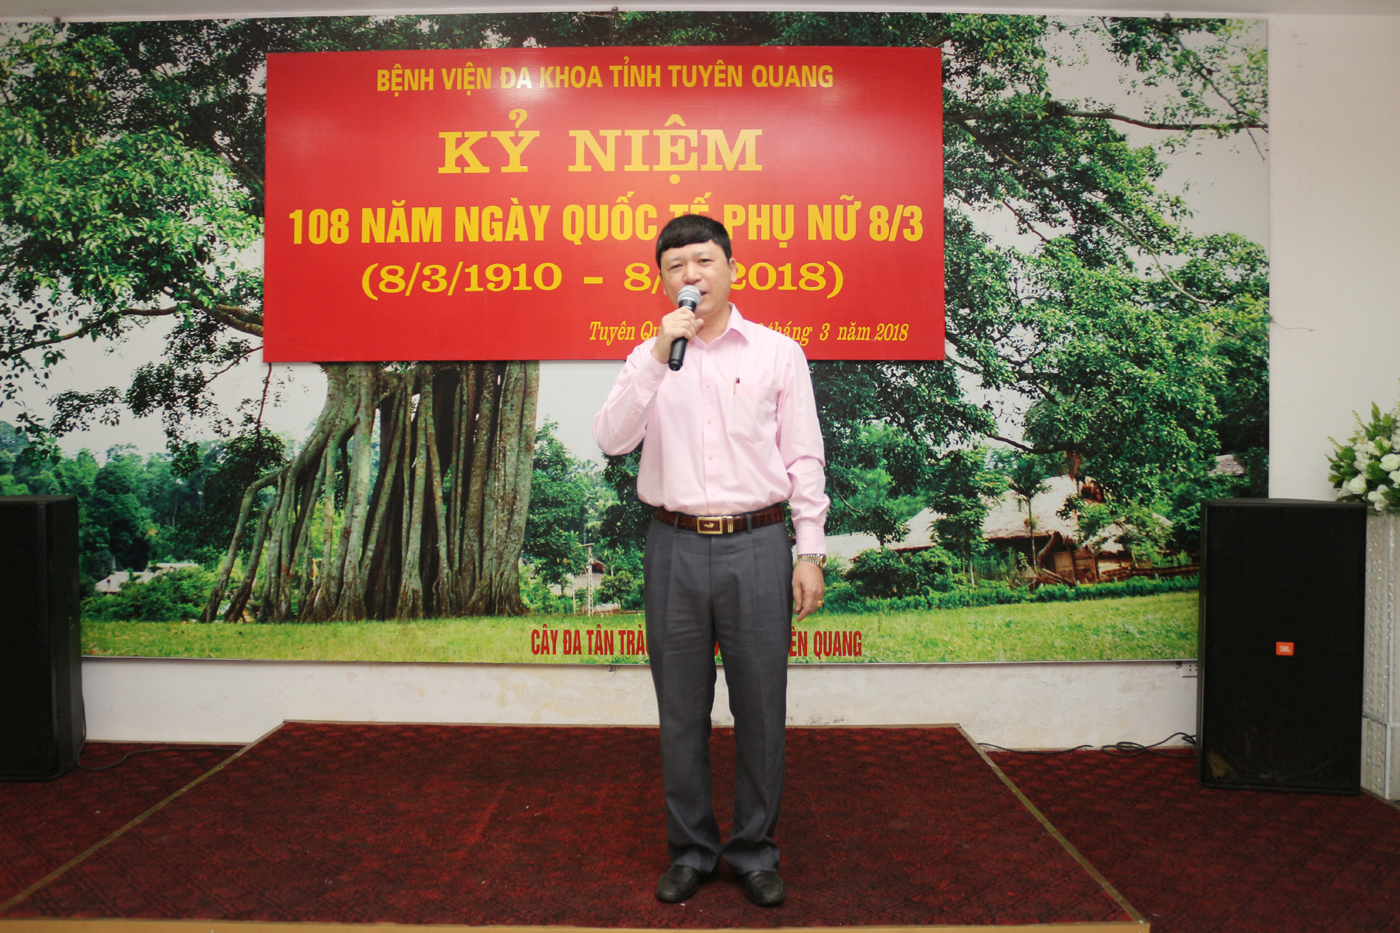 Đ/c Phạm Quang thanh phát biểu tại buổi gặp mặt